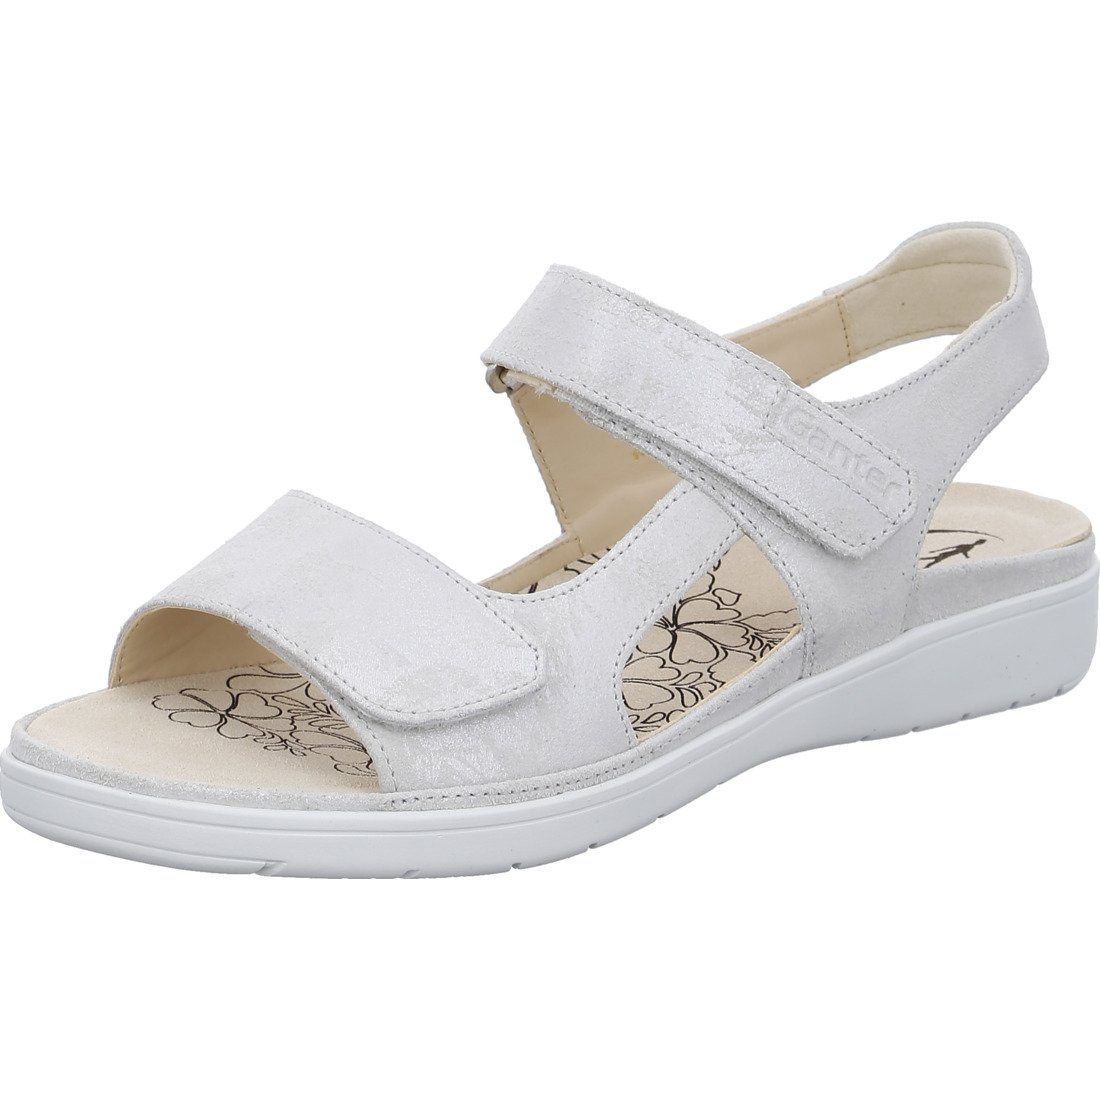 Ganter Ganter Schuhe, Sandalette Gina - Leder Damen Sandalette weiß 048813